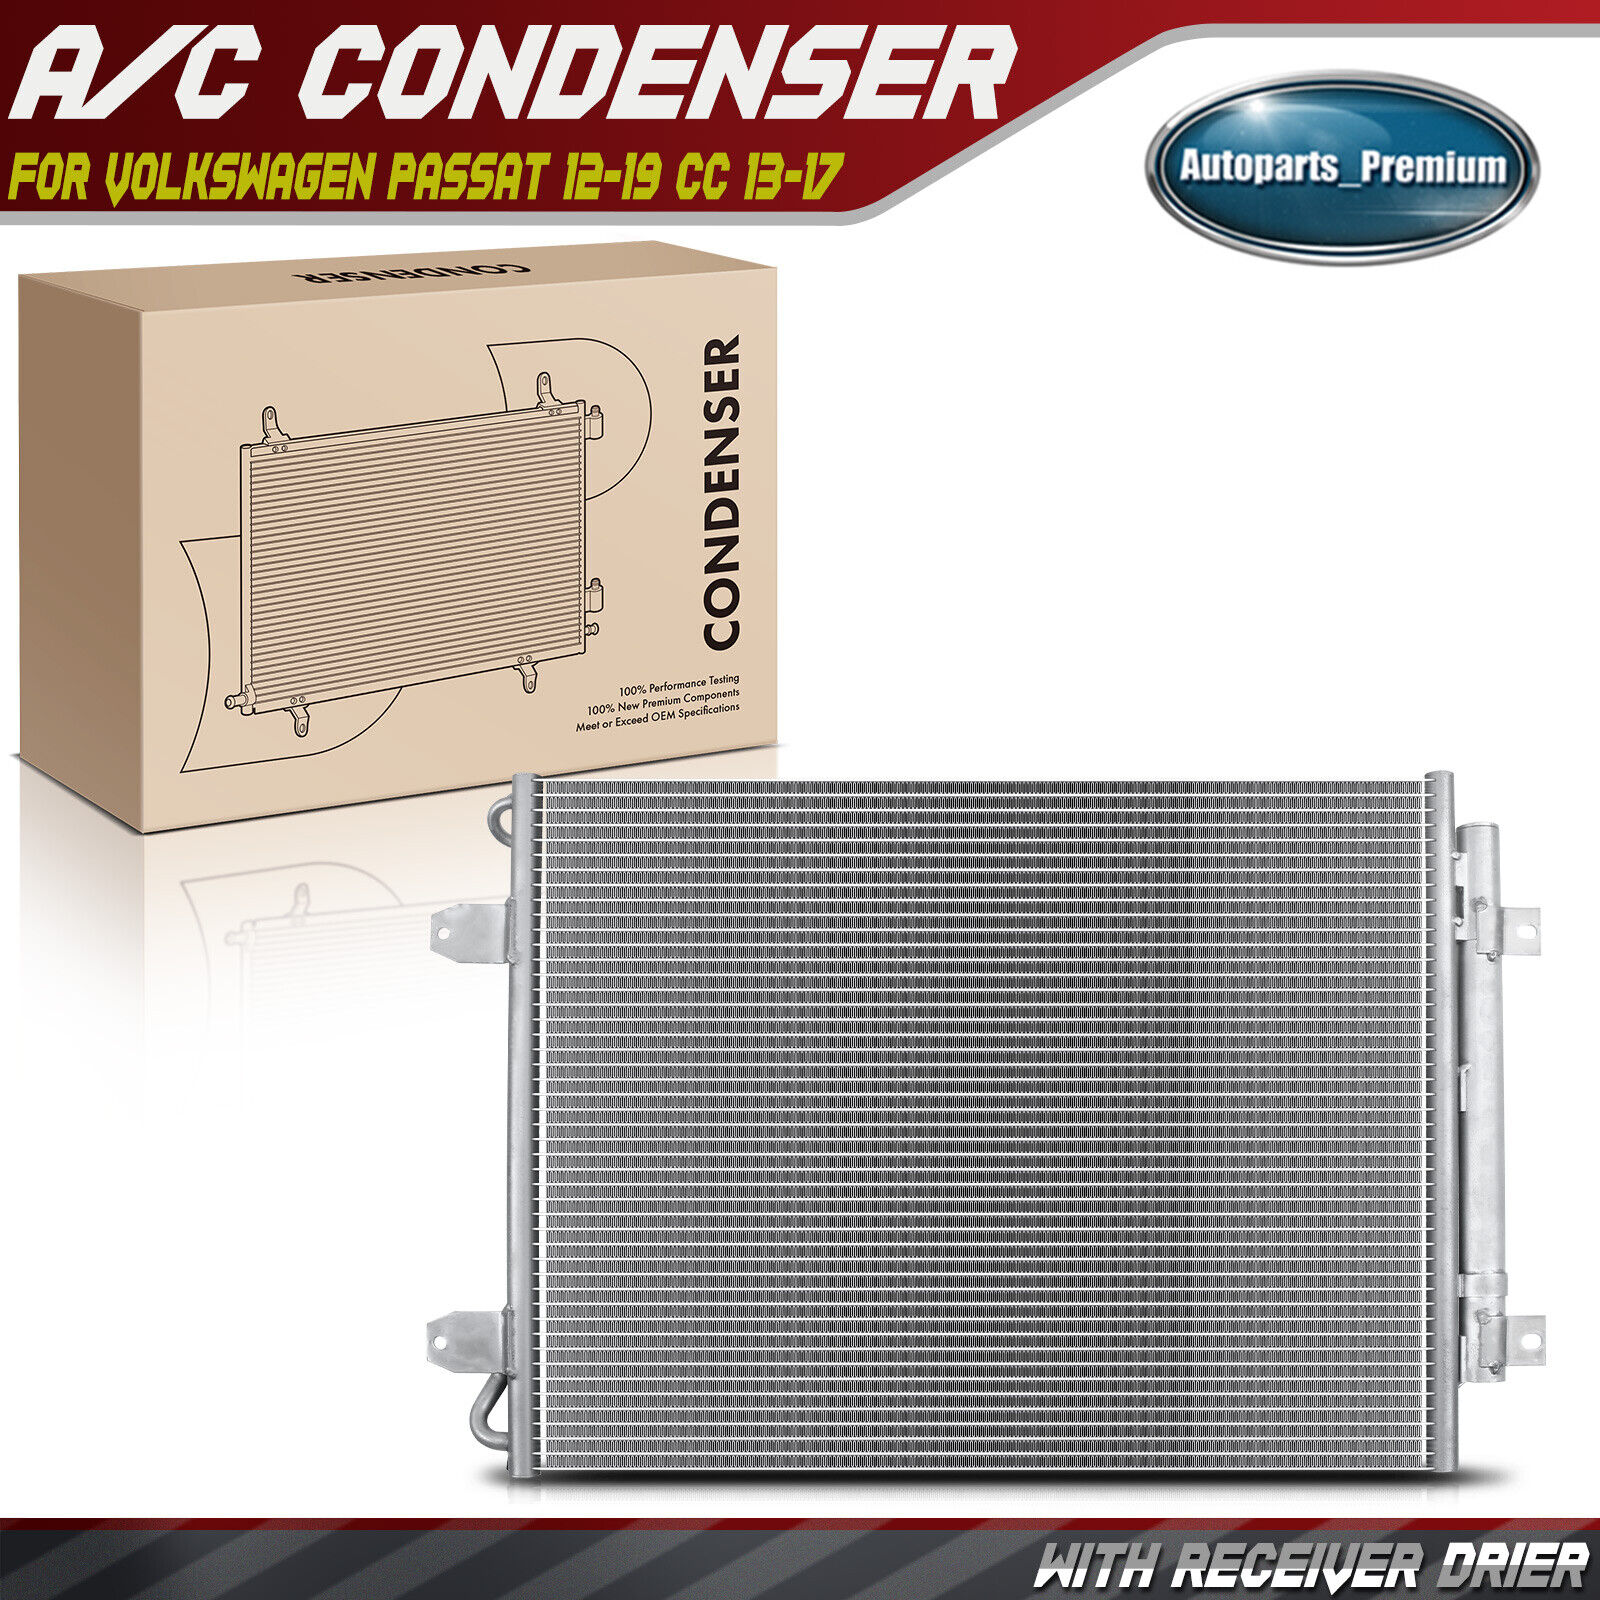 A/C Condenser with Receiver Drier for Volkswagen Passat 13-15 18-19 CC 2013-2017